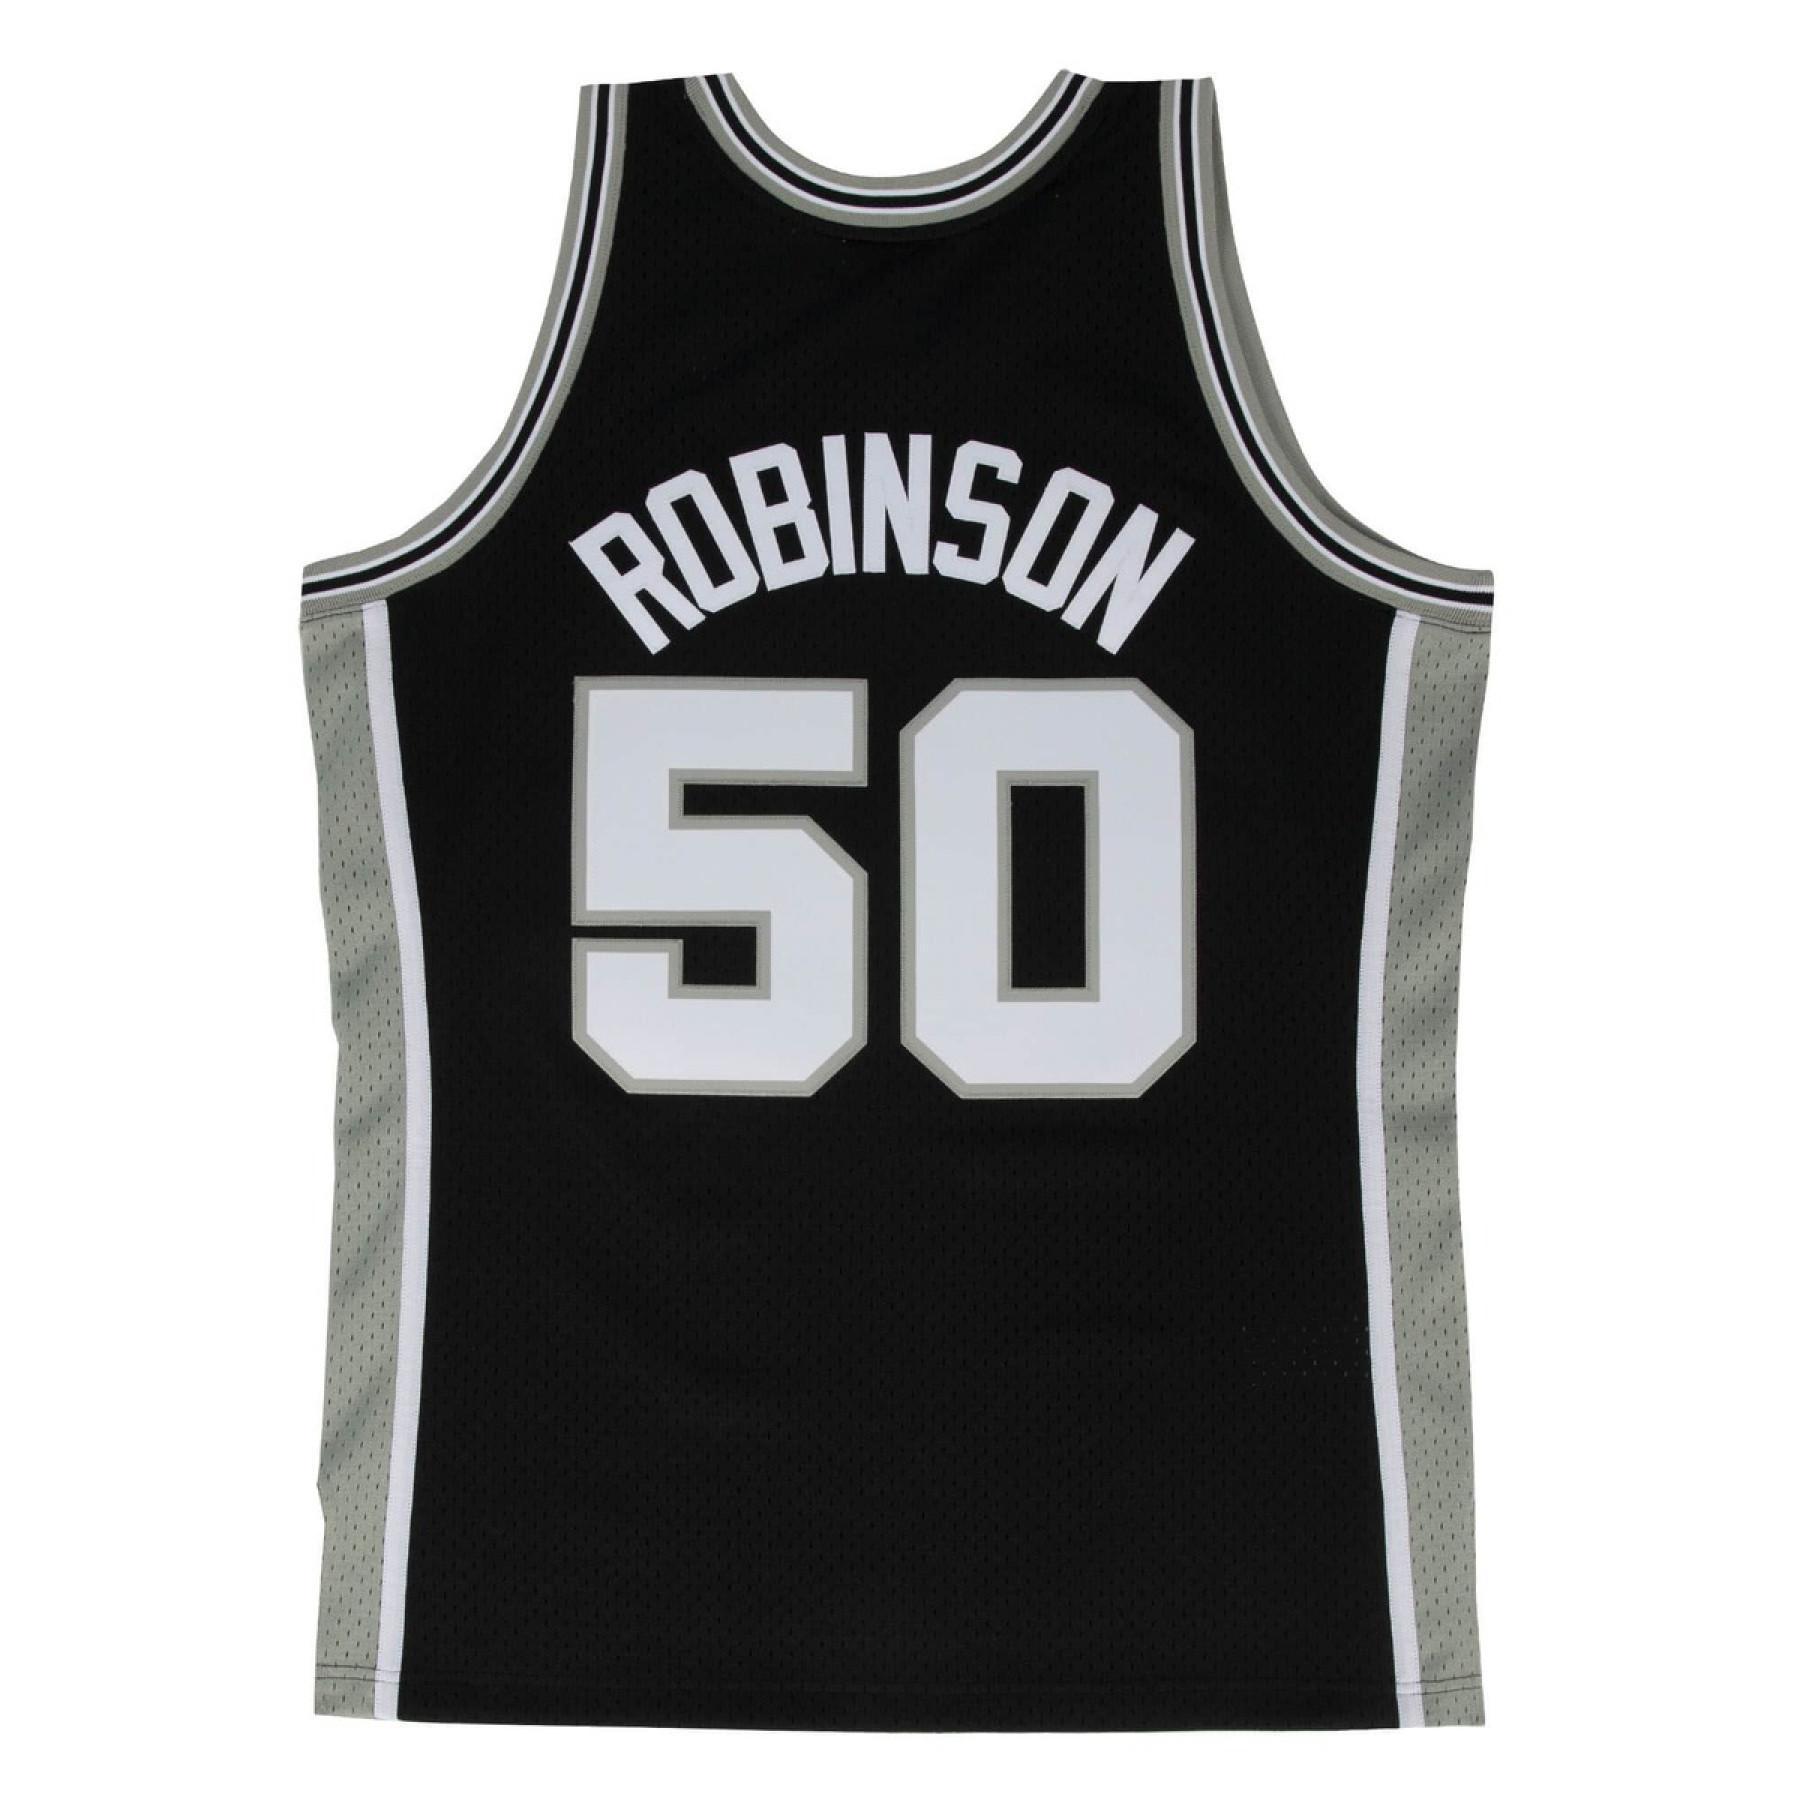 Jersey San Antonio Spurs David Robinson